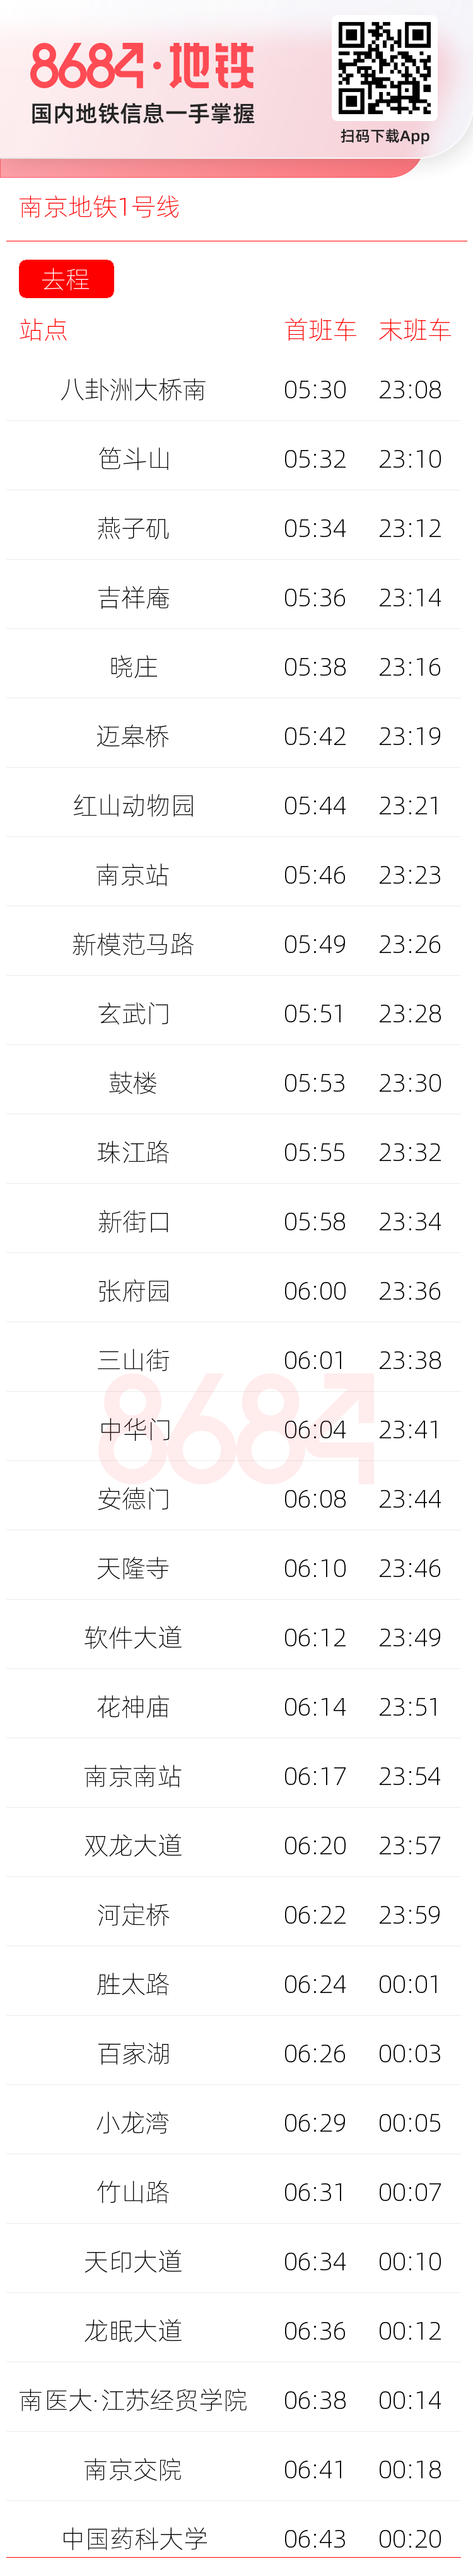 南京地铁1号线运营时间表